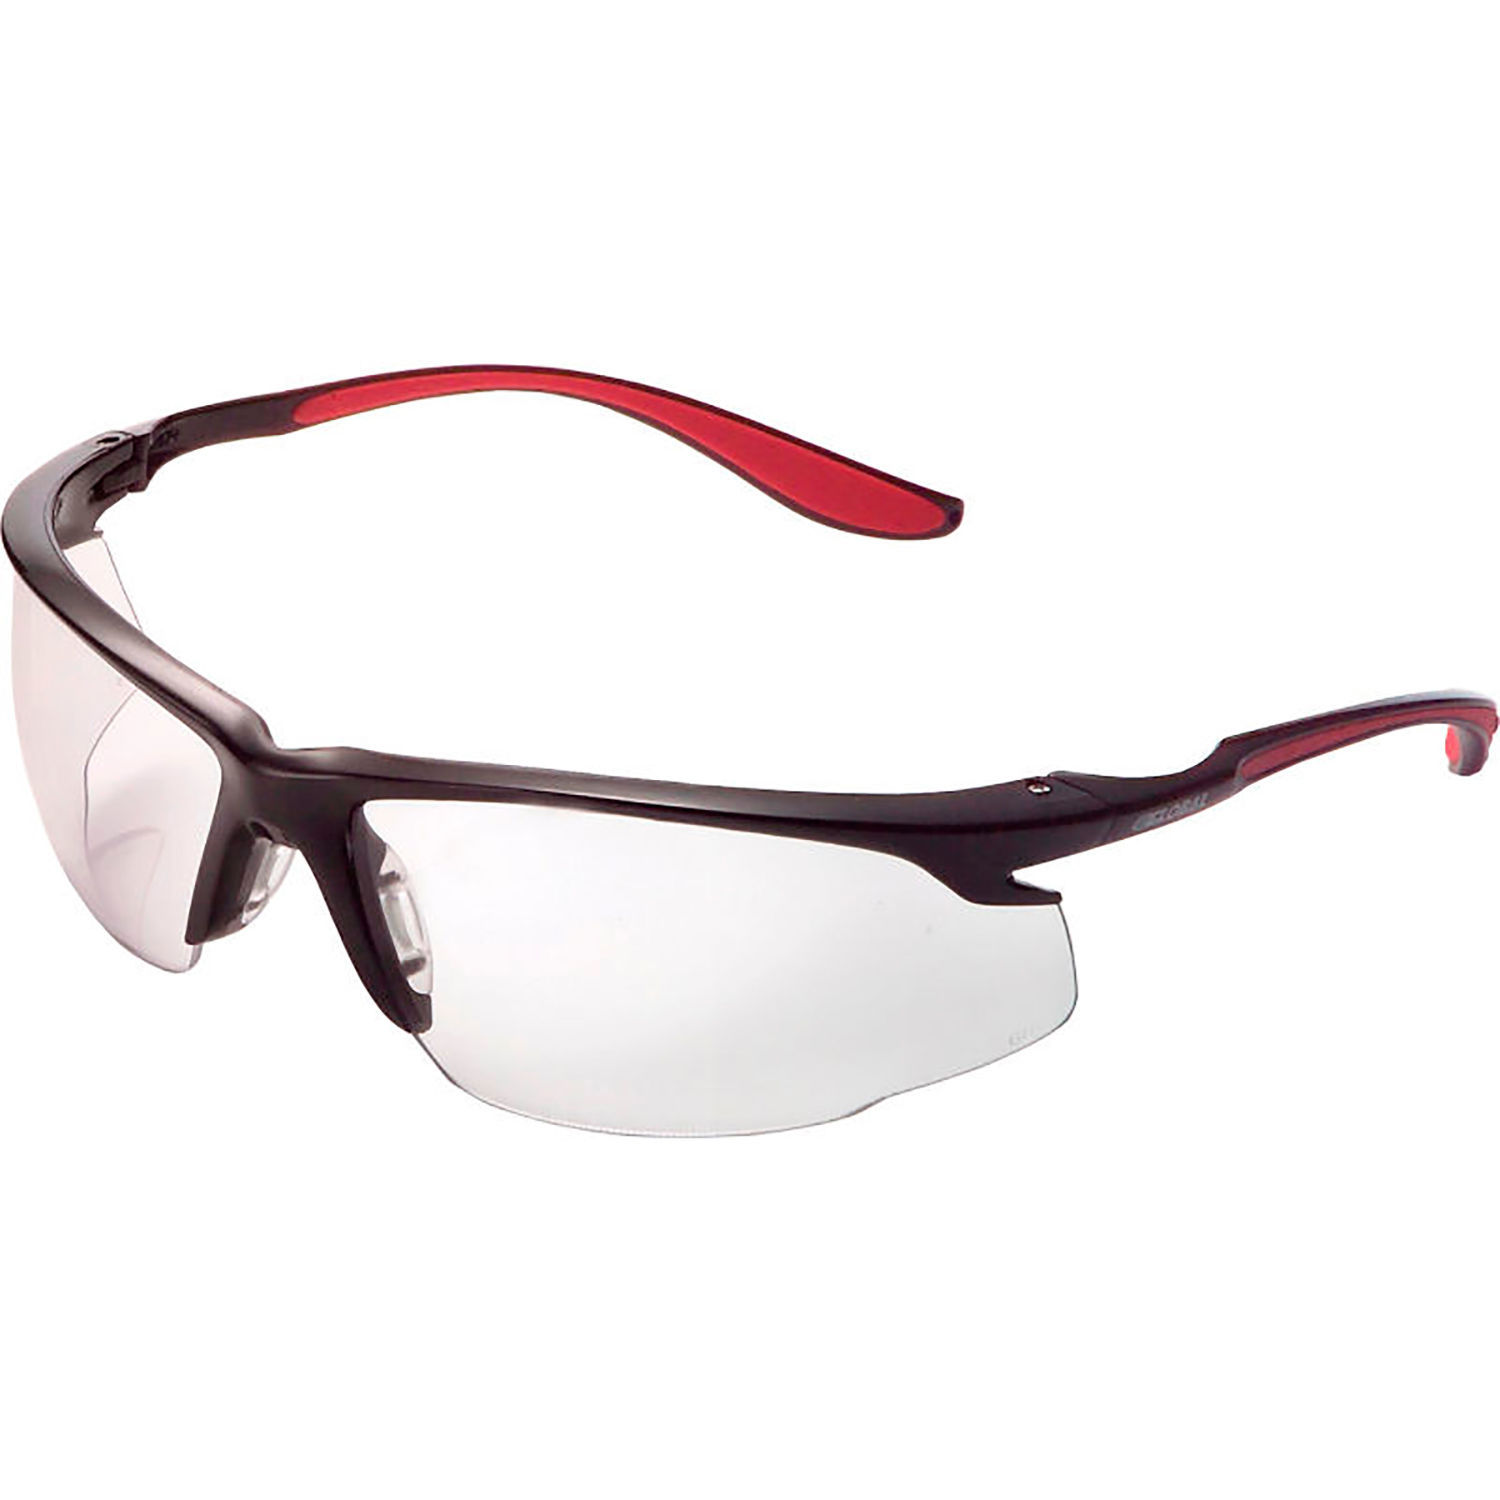 Sport Half Frame Safety Glasses, Anti-Fog, Clear Lens, Red Frame - image 1 of 1